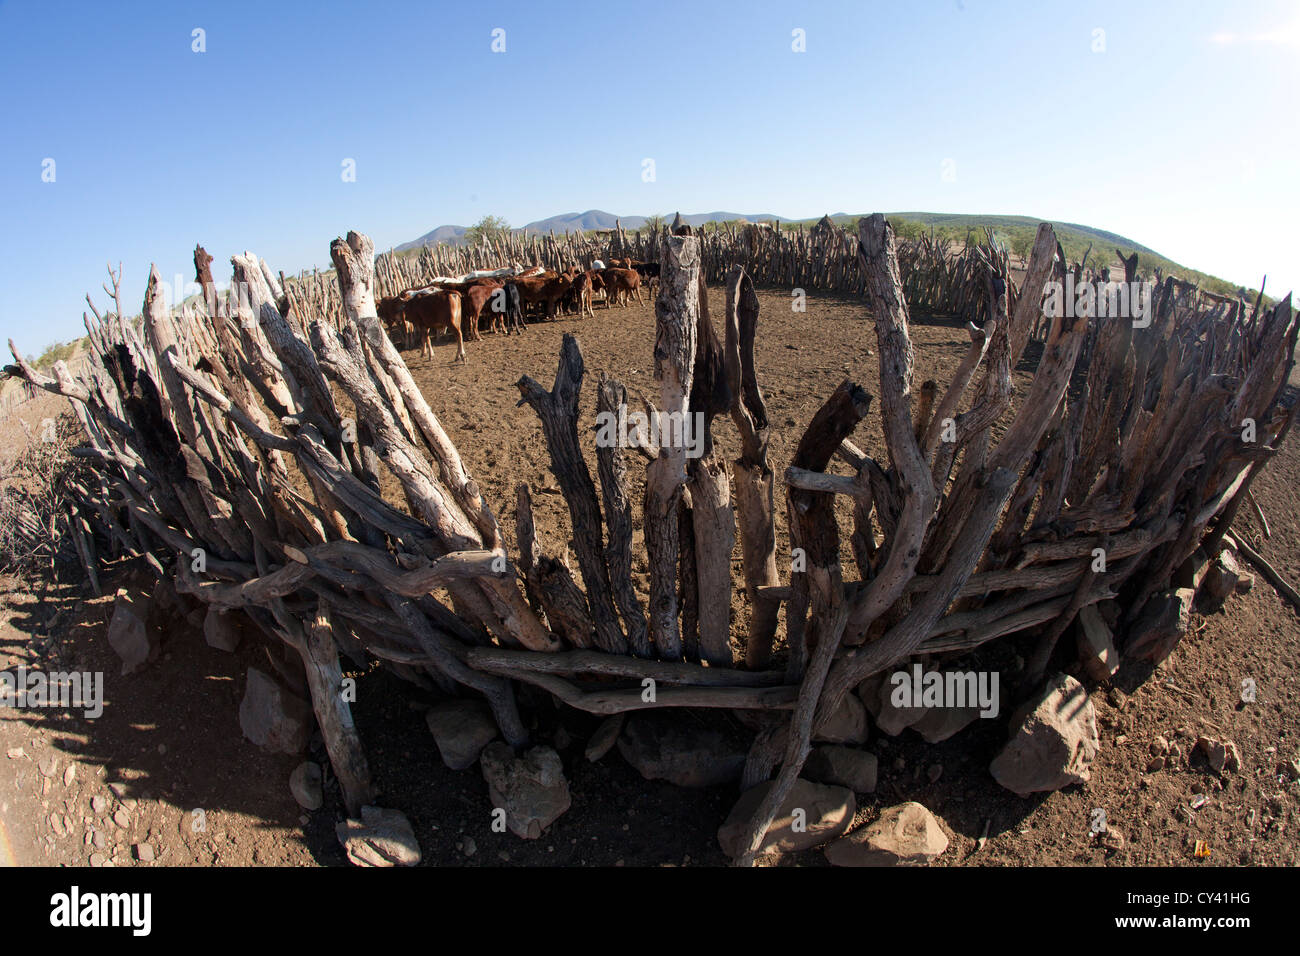 Himba tribe in Namibia. Stock Photo